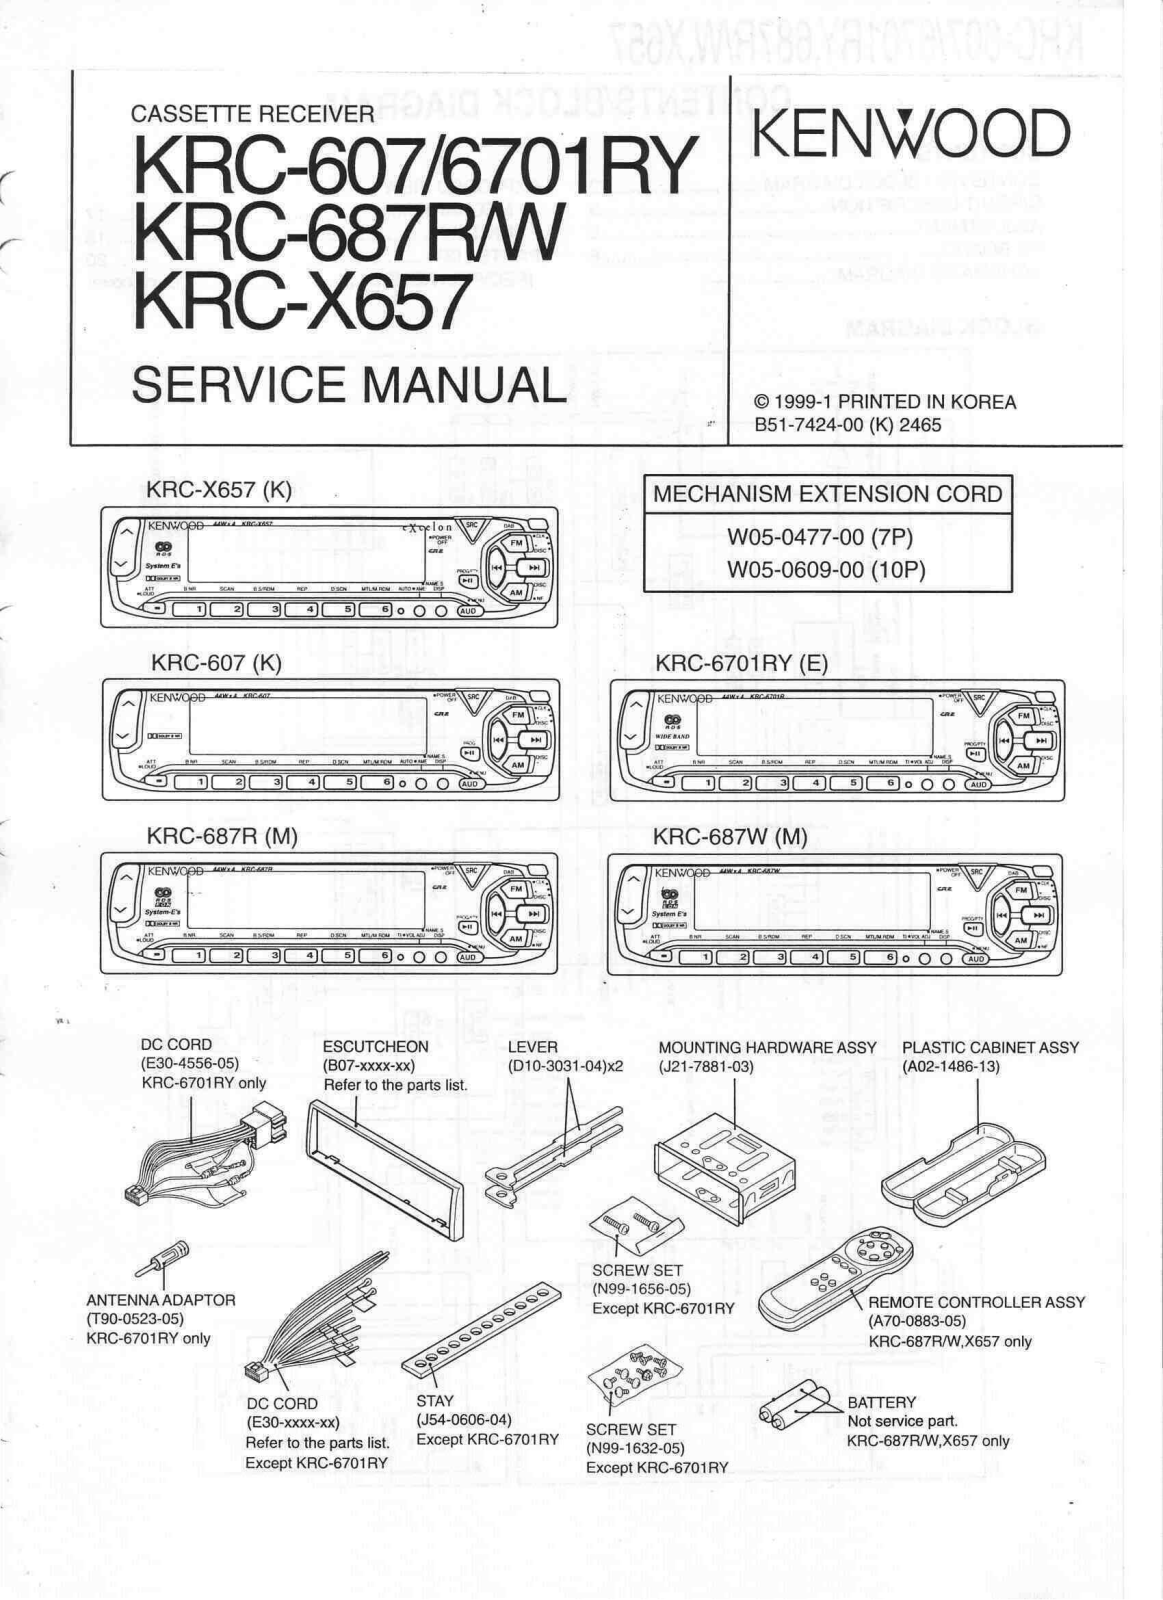 Kenwood KRC-607, KRC-6701RY, KRC-687R, KRC-687W, KRC-X657 Service Manual